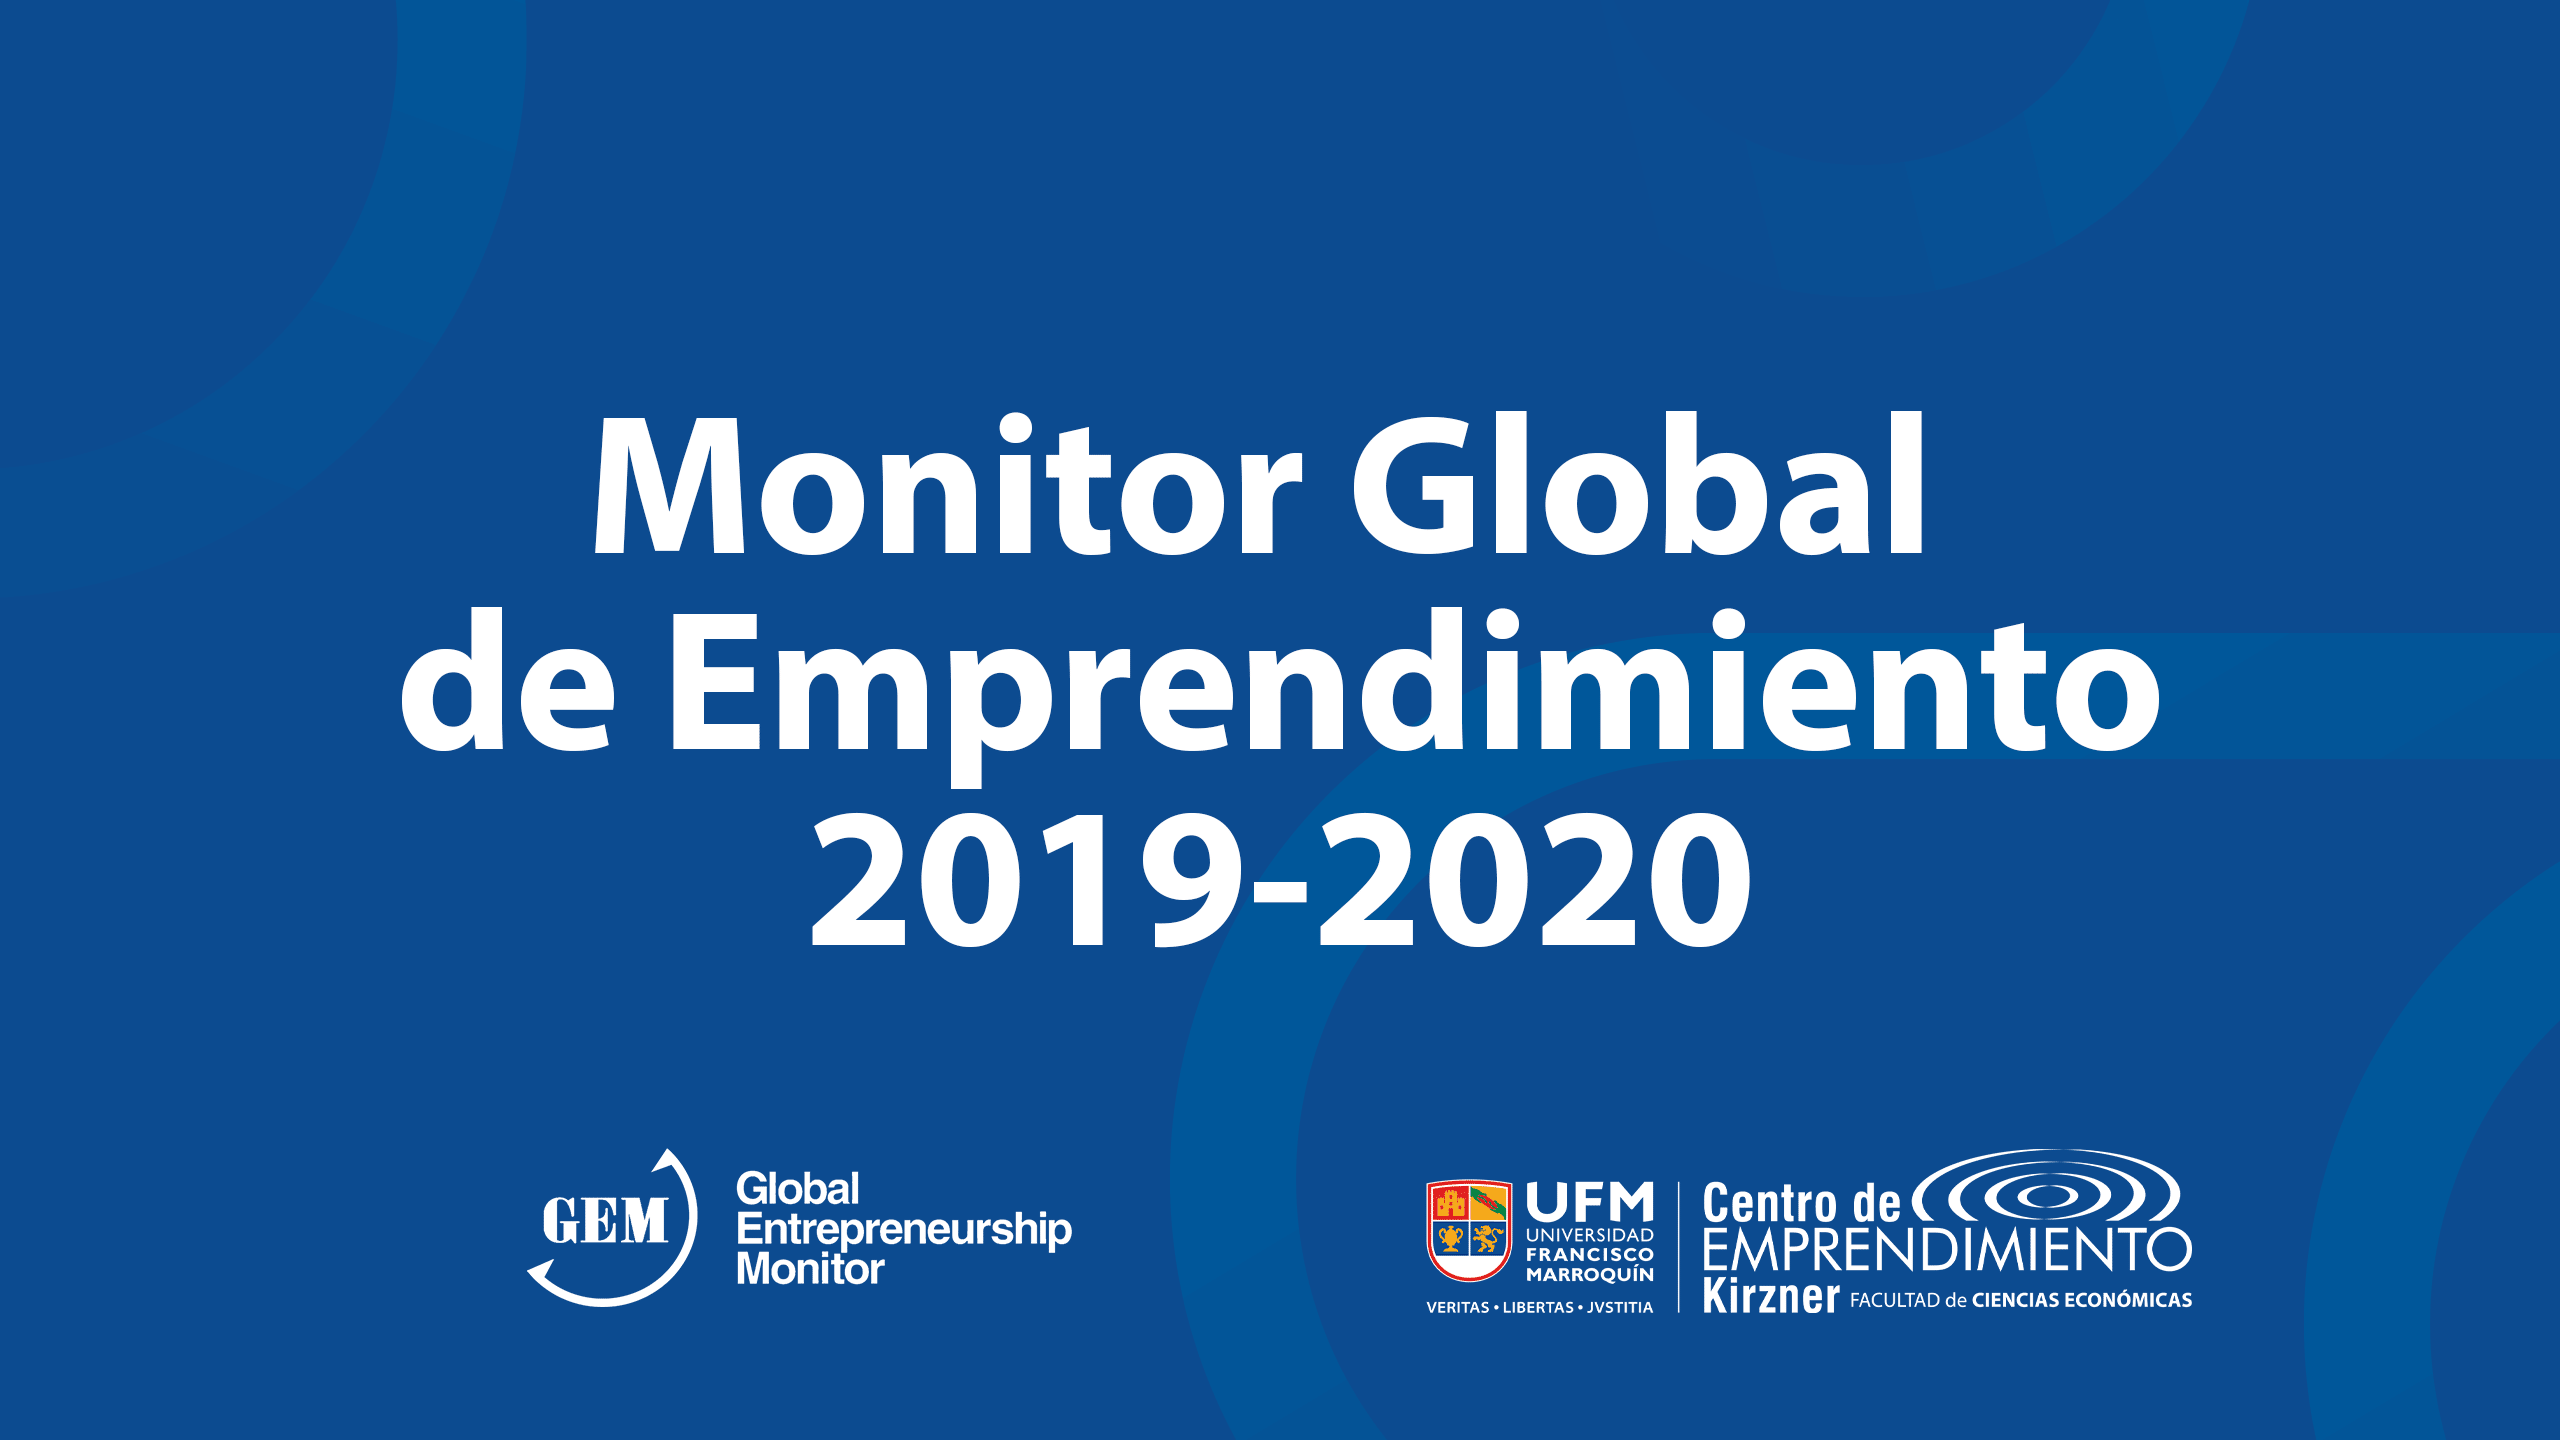 Monitor Global de Emprendimiento 2019-2020 | Desafíos: nuevas oportunidades para emprender